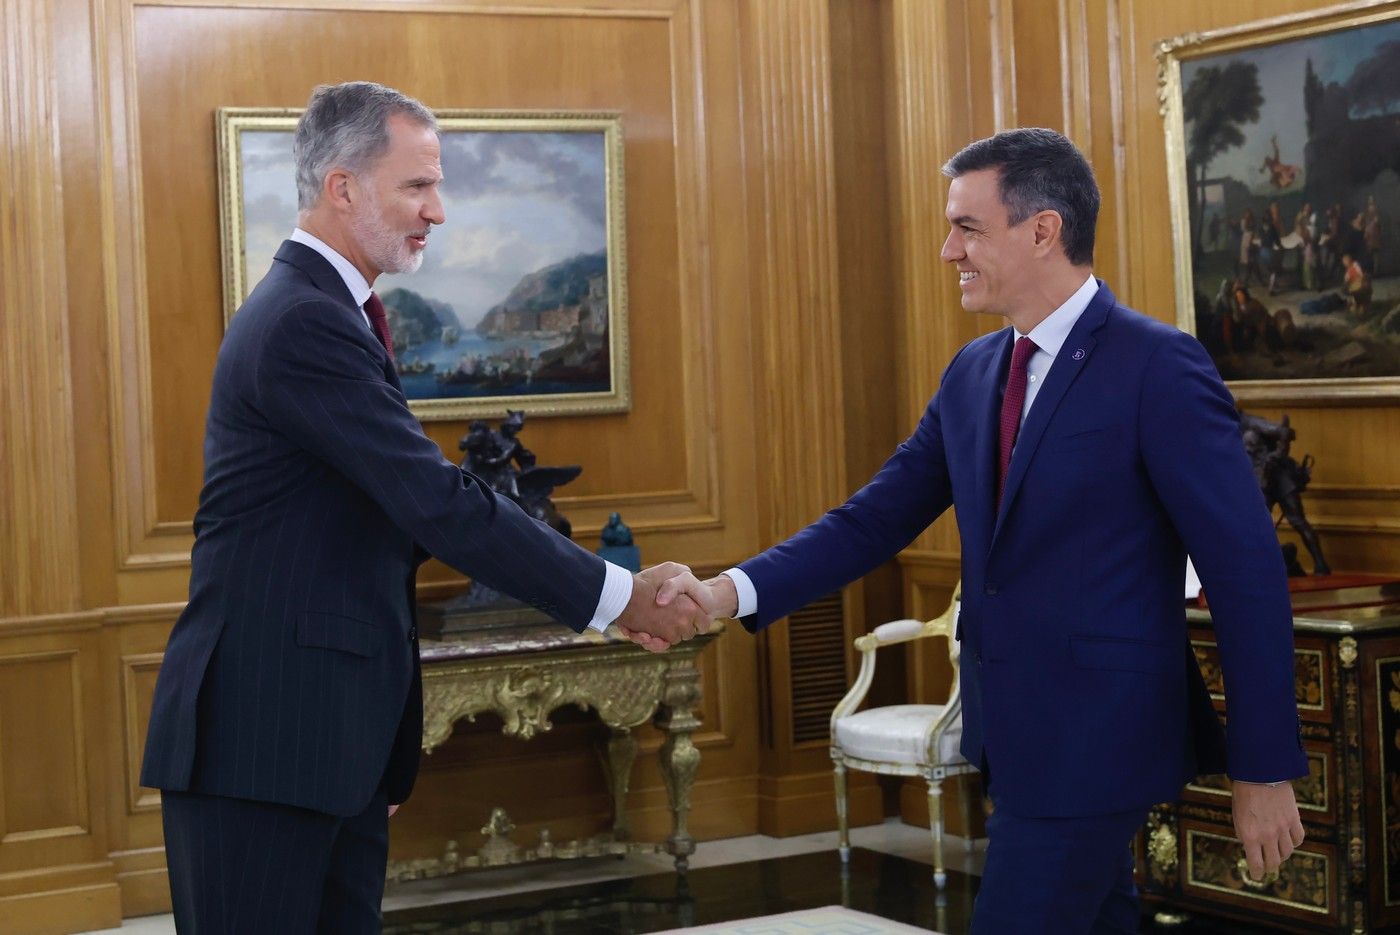 Turno para Pedro Sánchez: el Rey le encarga que intente formar Gobierno